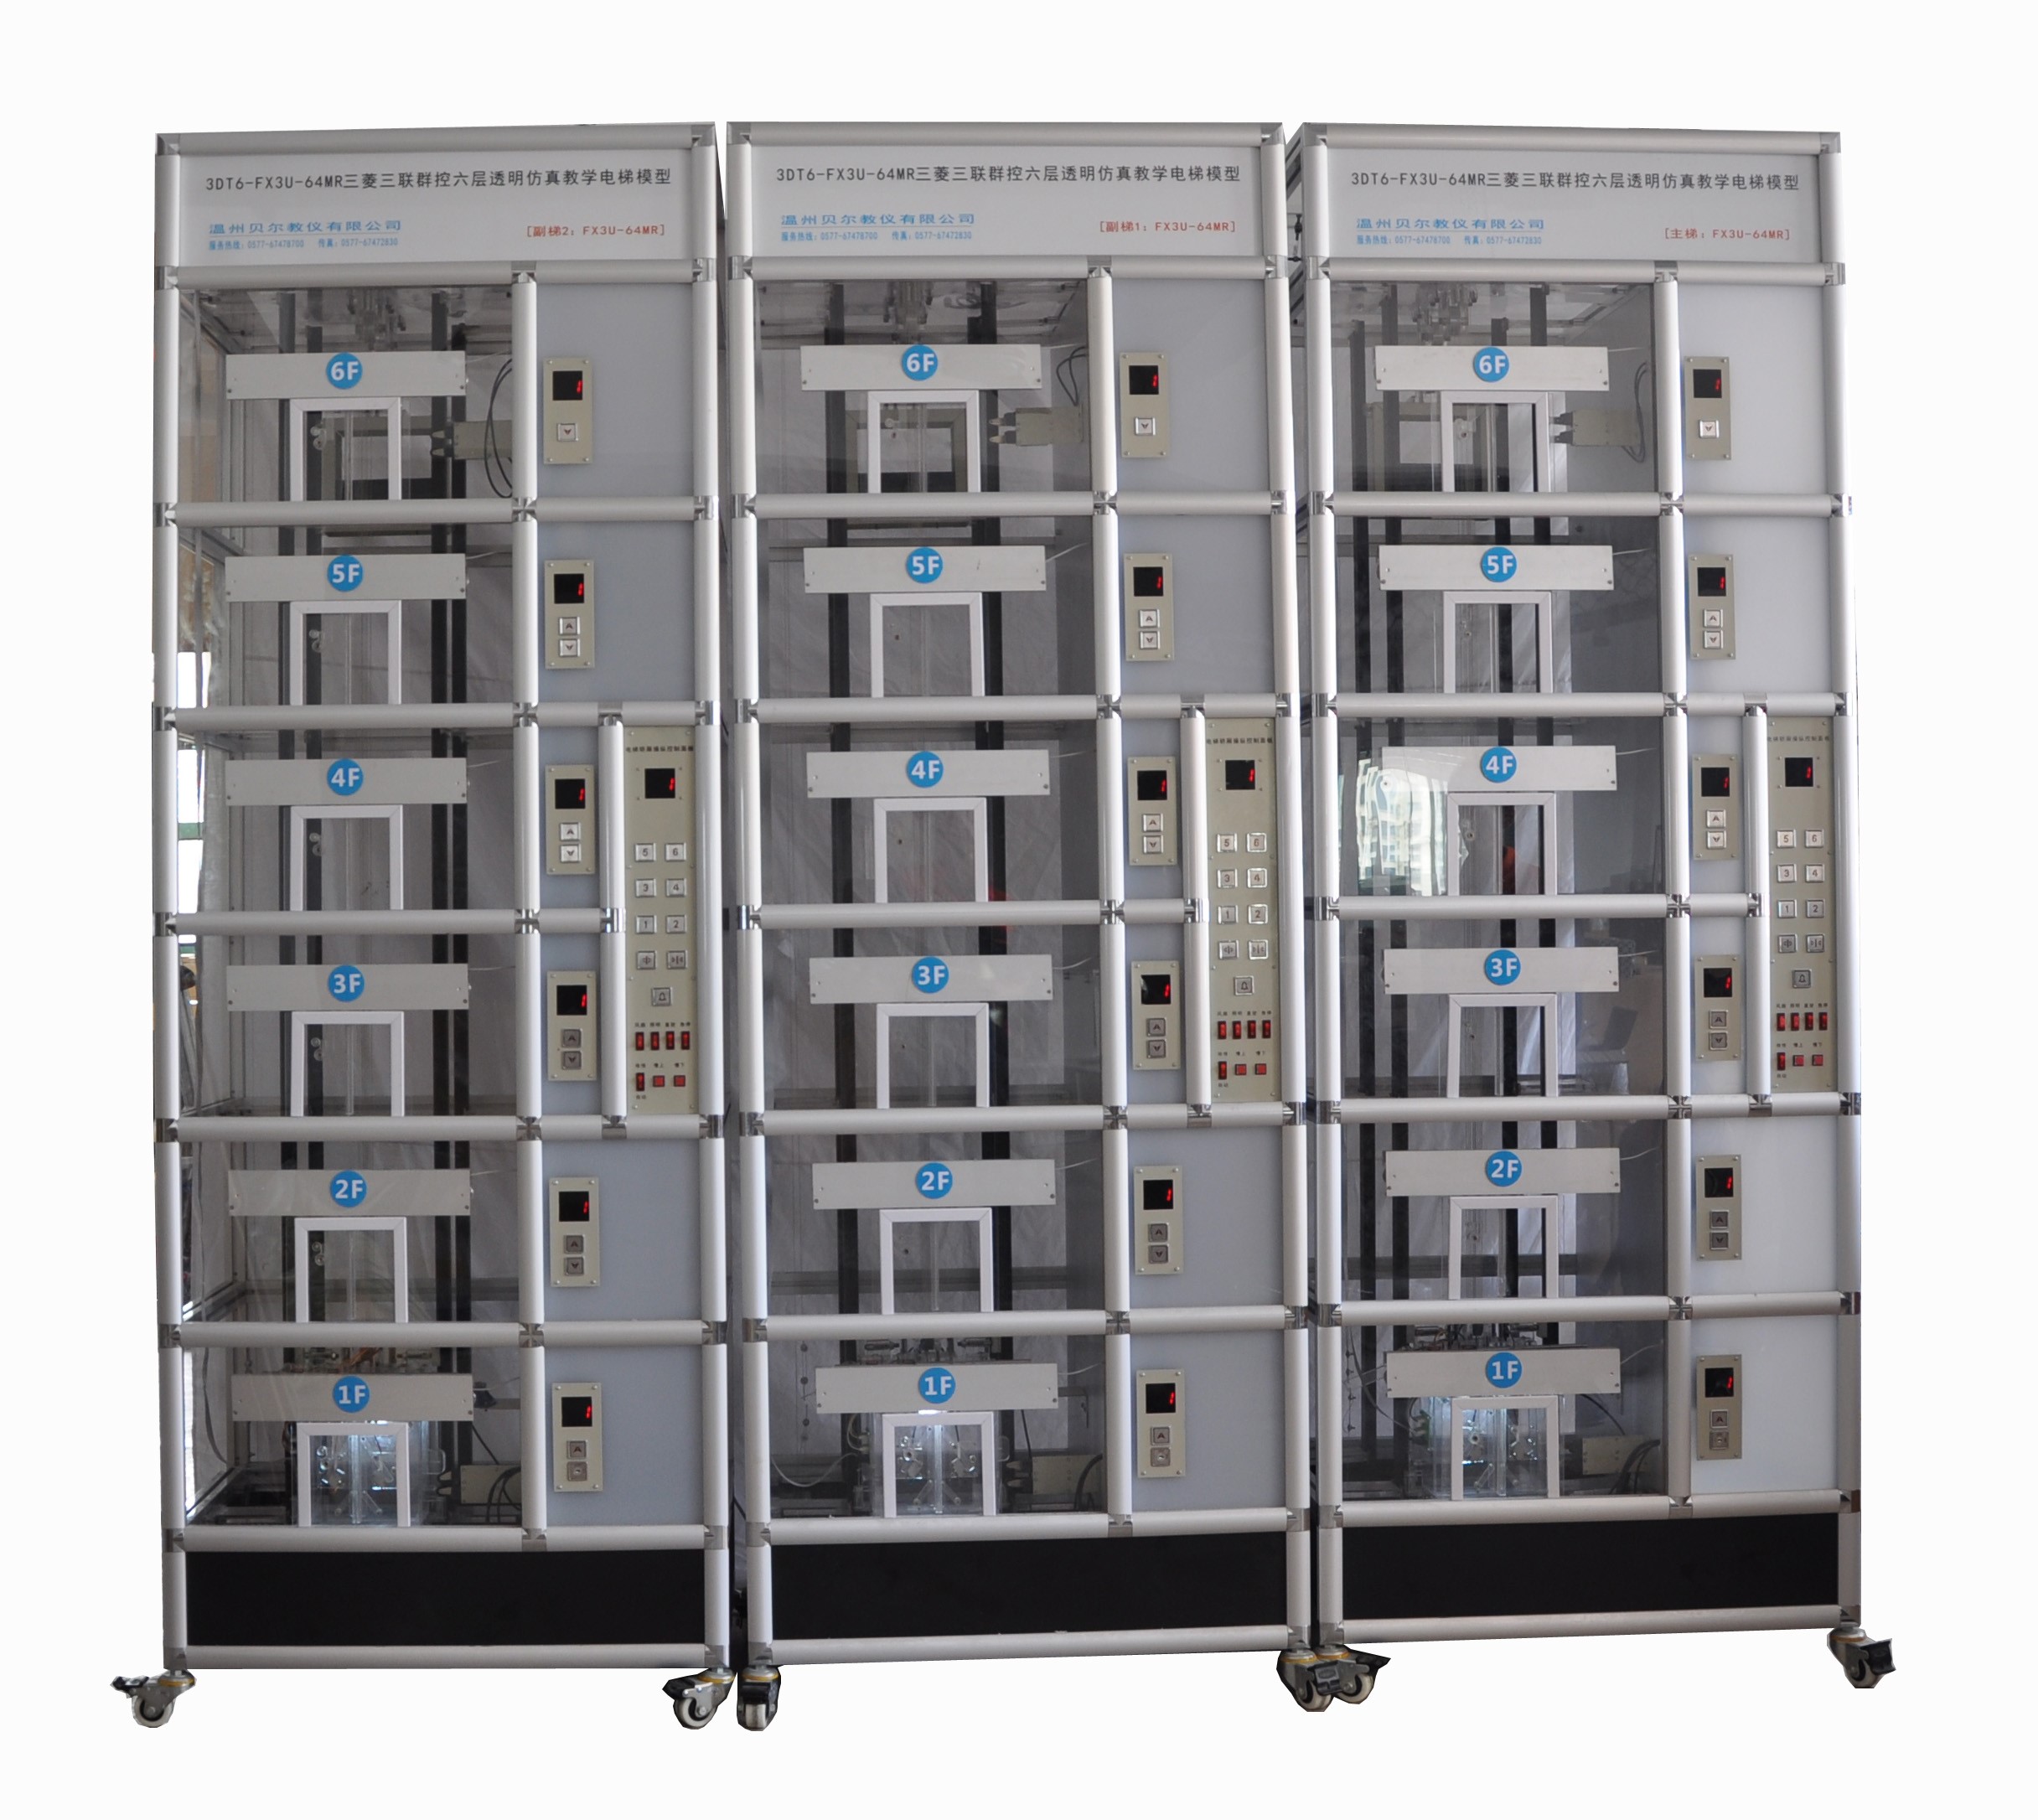 BR-1128三菱三联六层群控透明仿真教学电梯模型